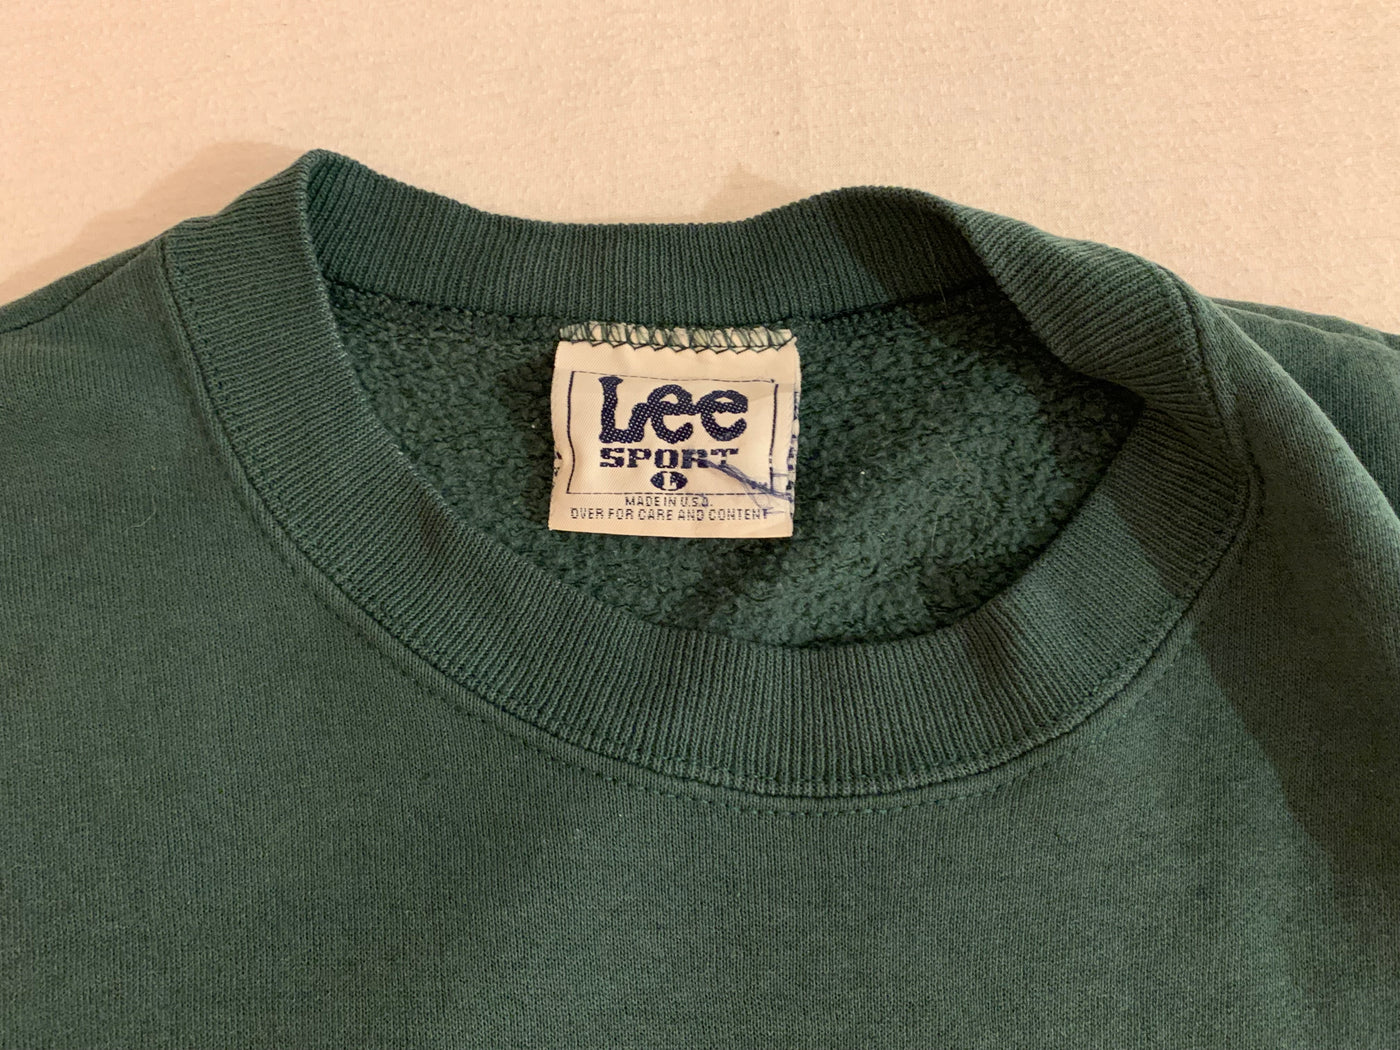 Vintage Packers sweatshirt